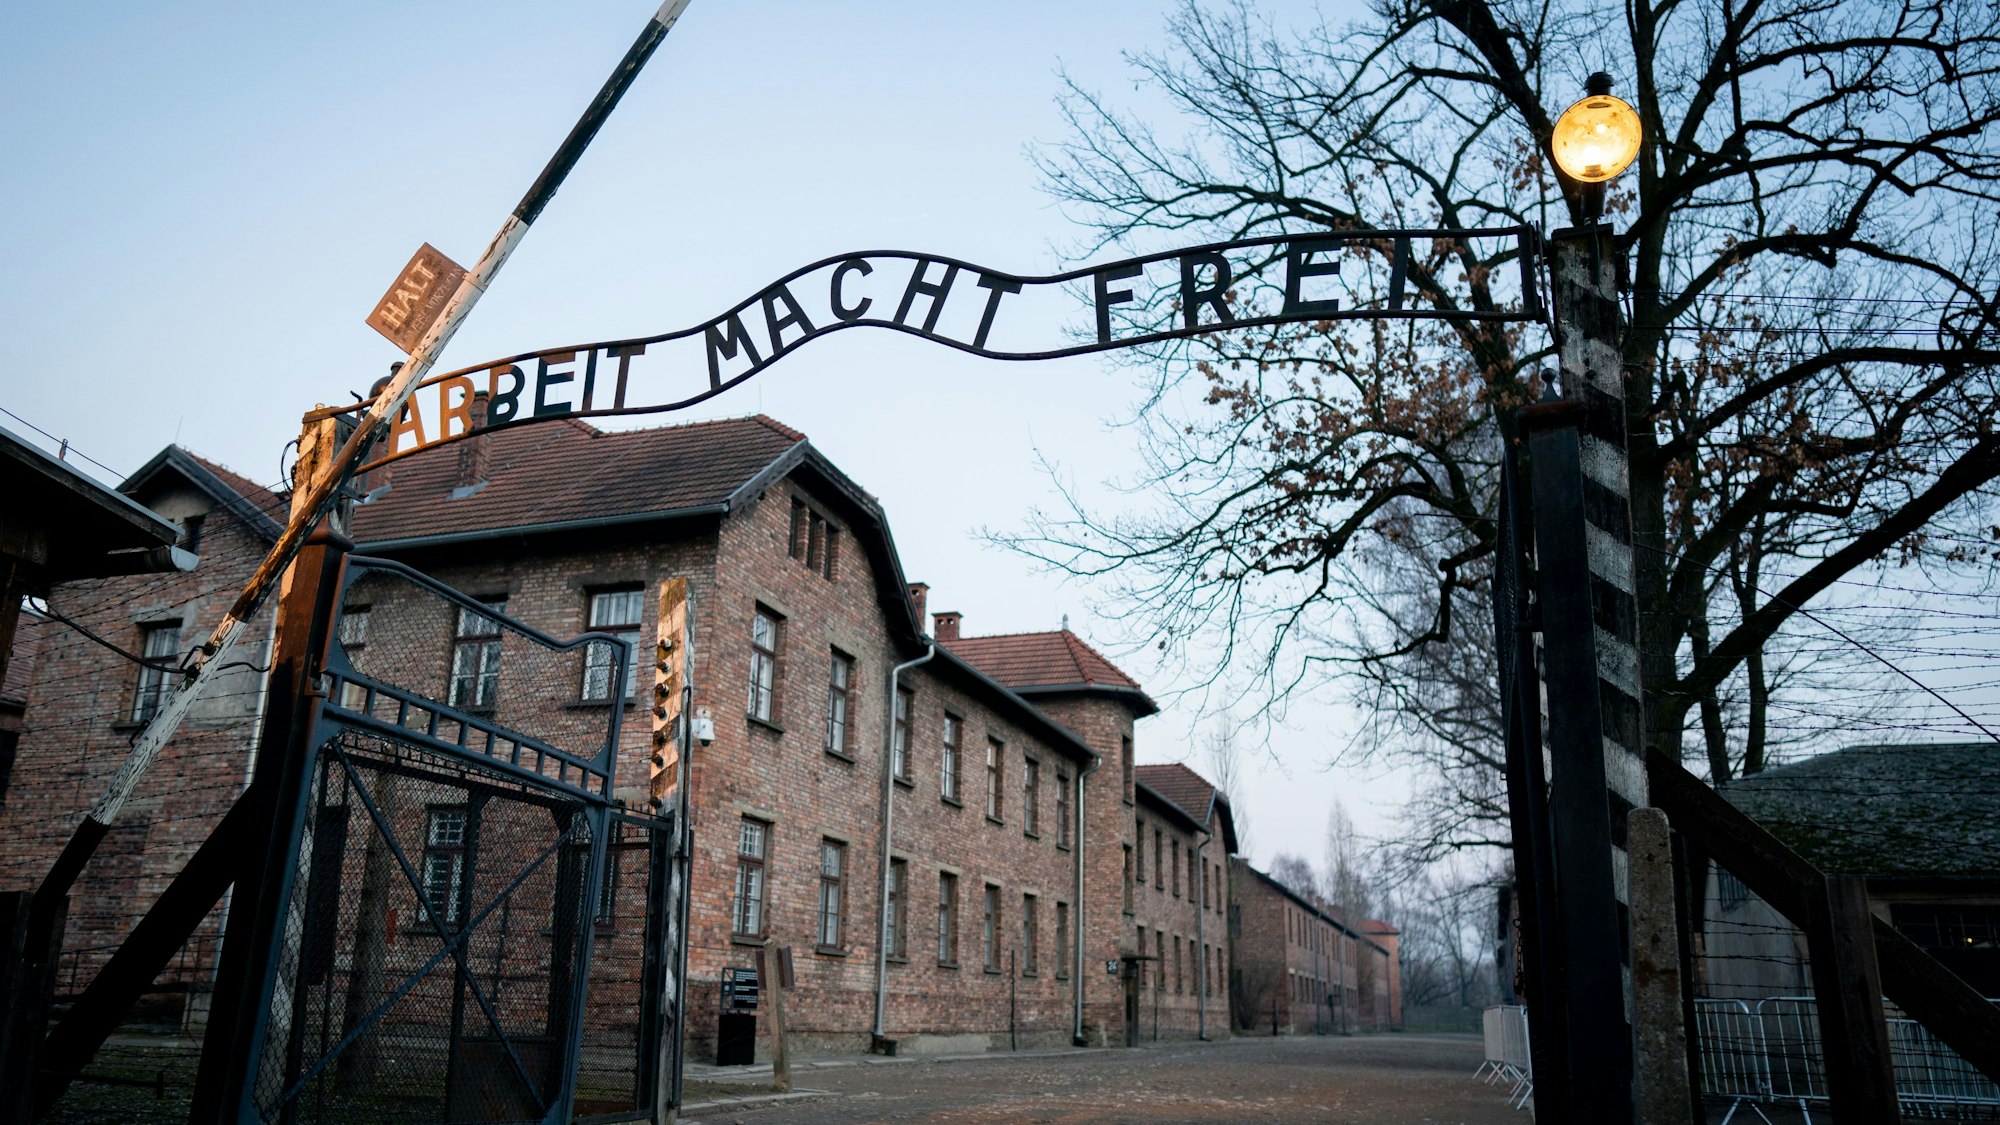 Polen, Oswiecim: Der Schriftzug „Arbeit macht frei“ ist am Tor zum früheren Konzentrationslager Auschwitz I zu sehen.